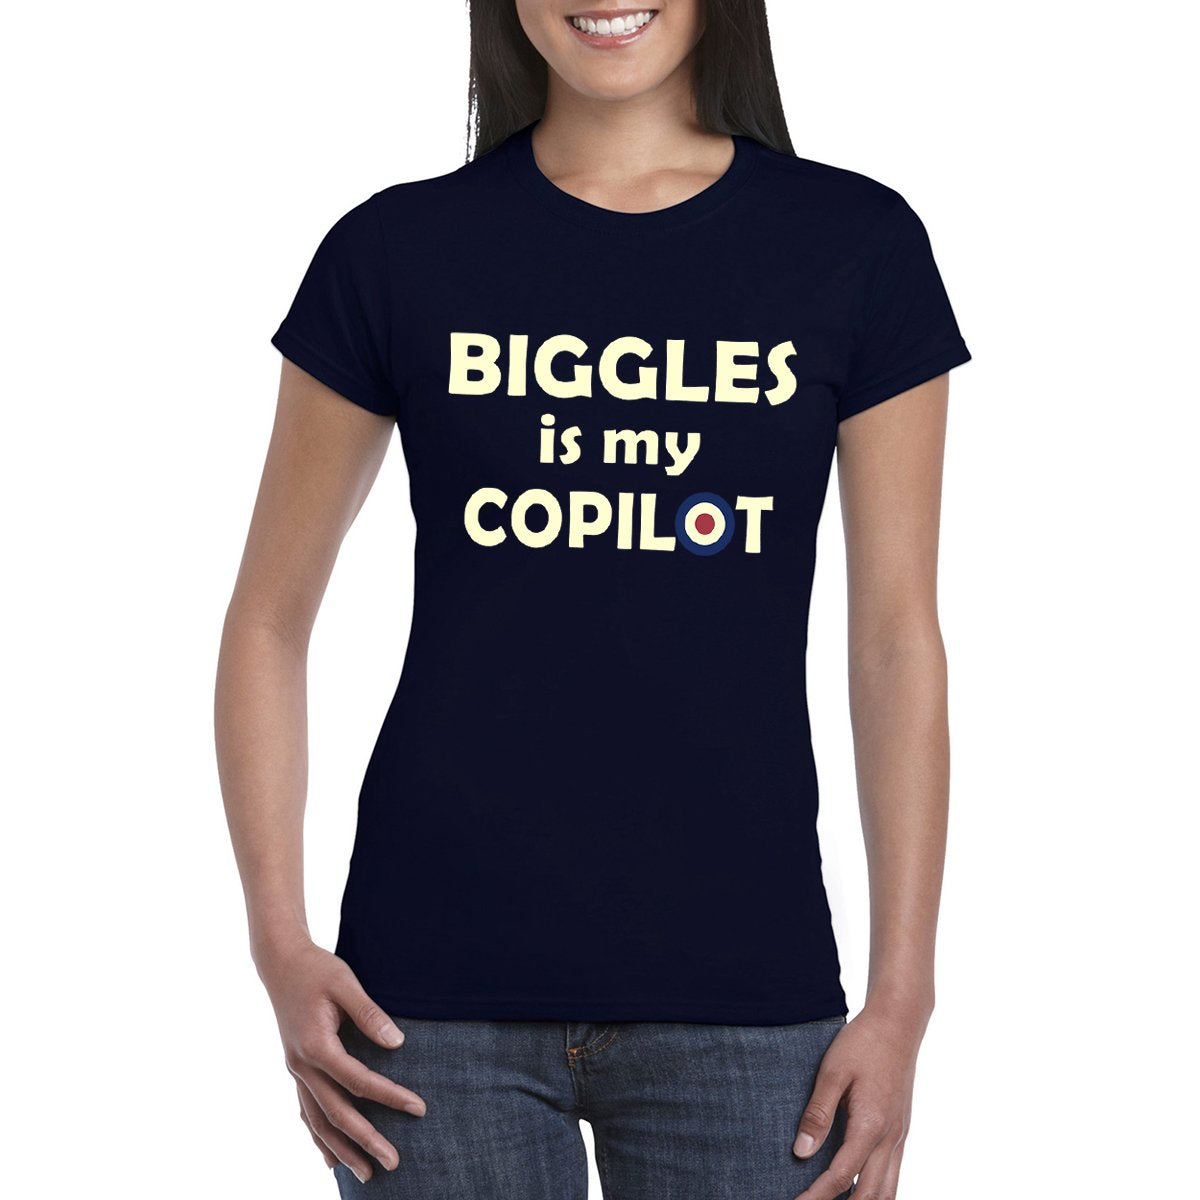 BIGGLES IS MY COPILOT Women's Crew Neck Tee